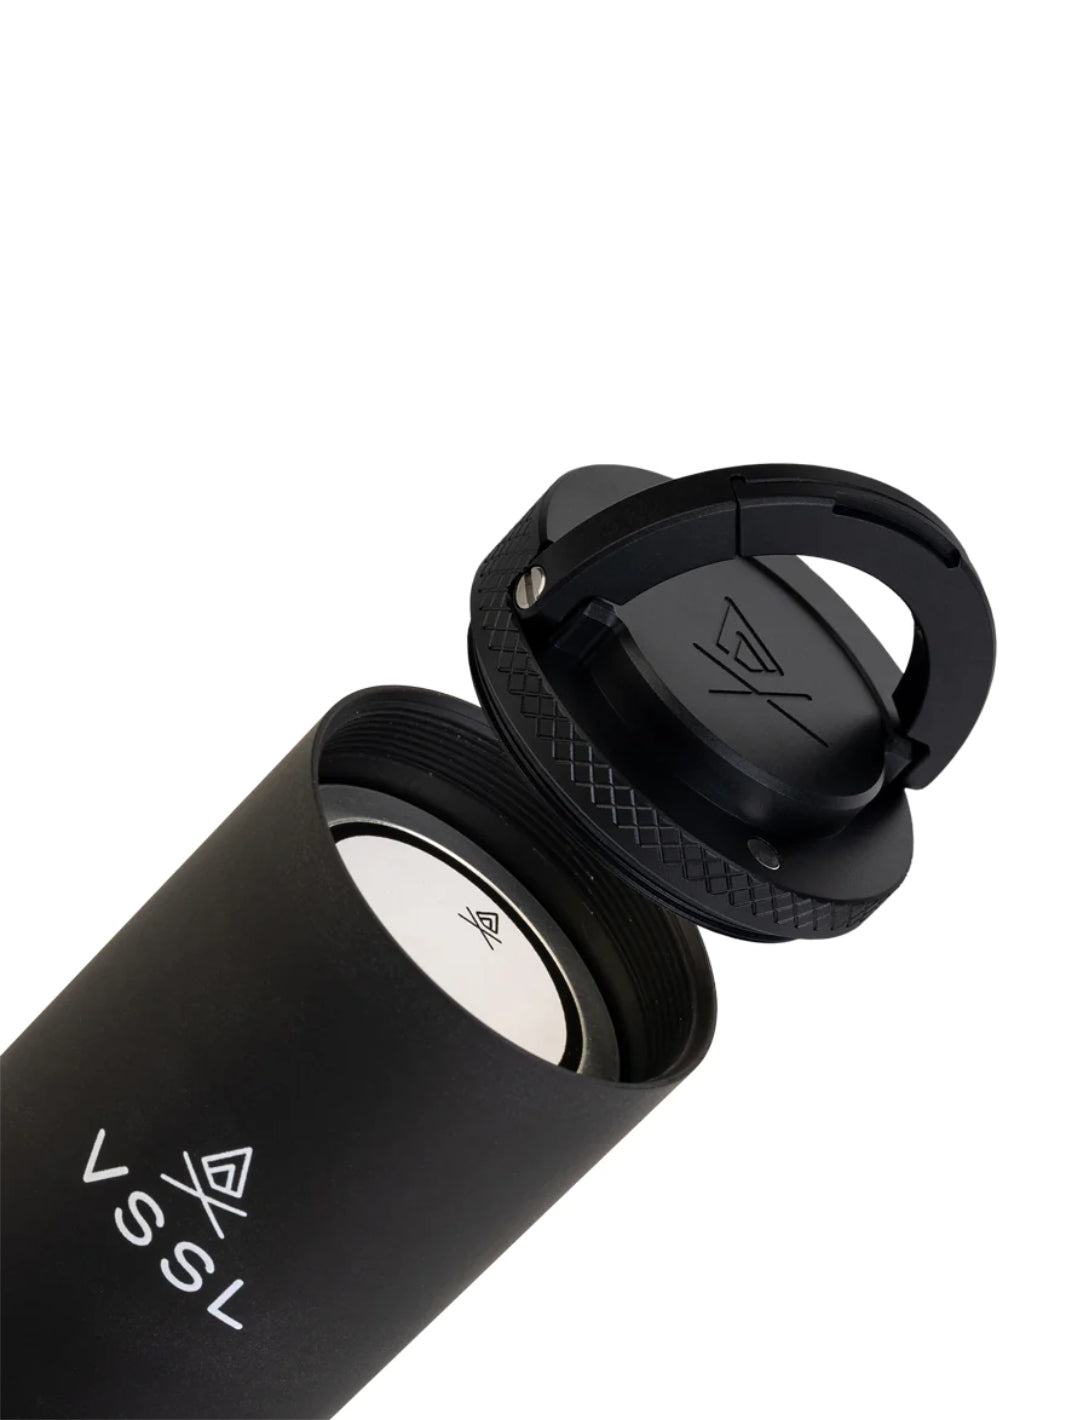 VSSL Mini Stash Speaker (Black)